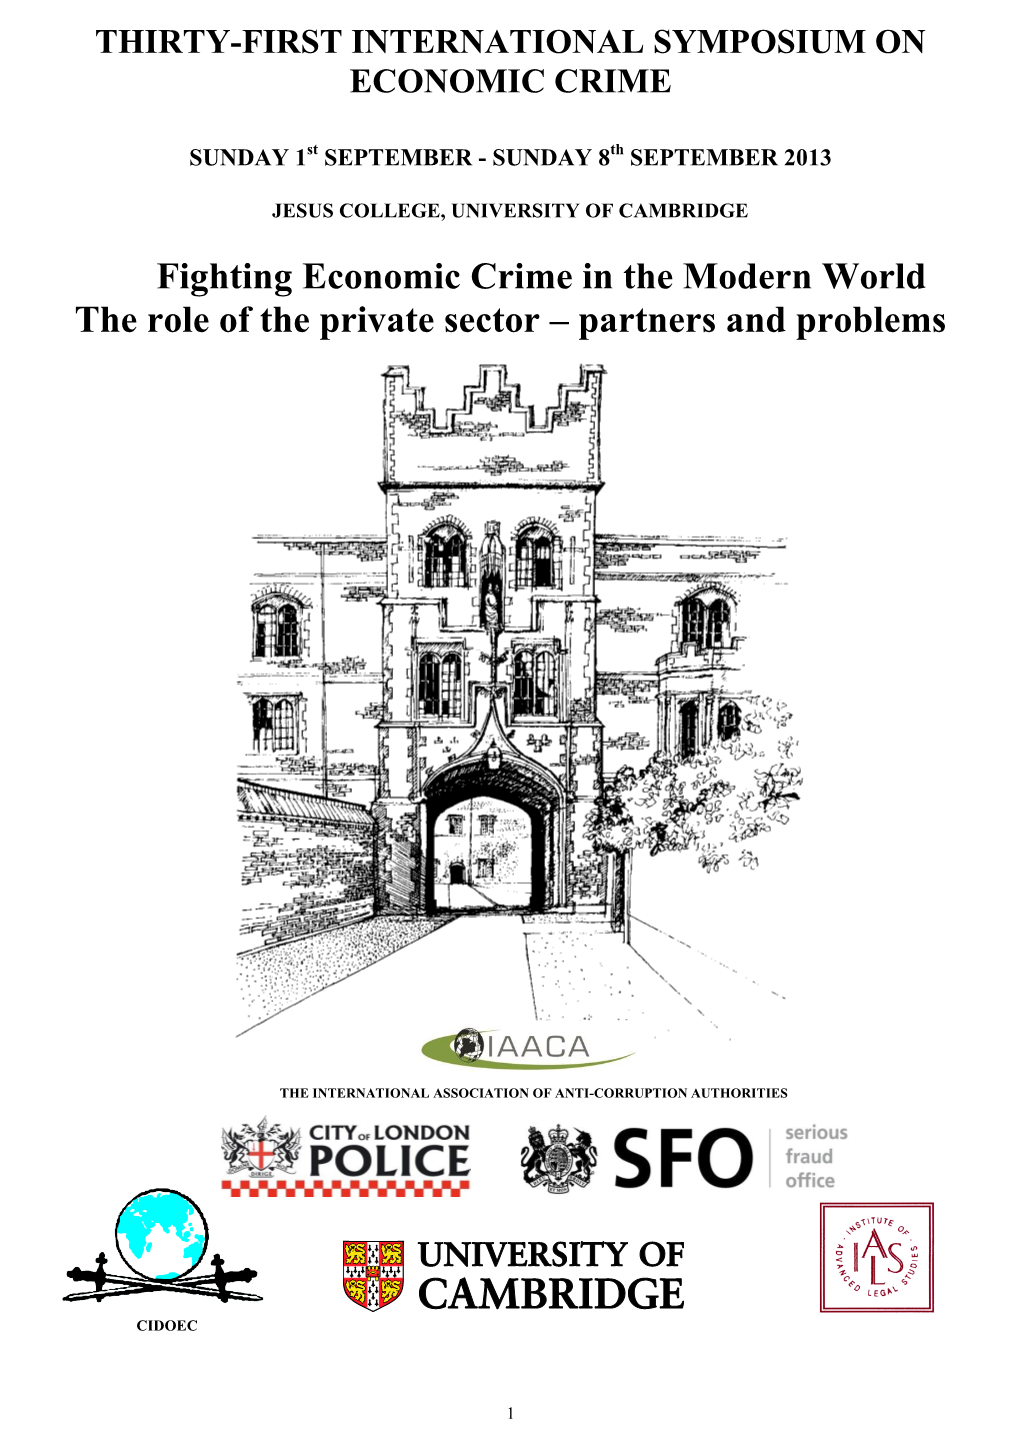 Twenty-Eighth International Symposium on Economic Crime